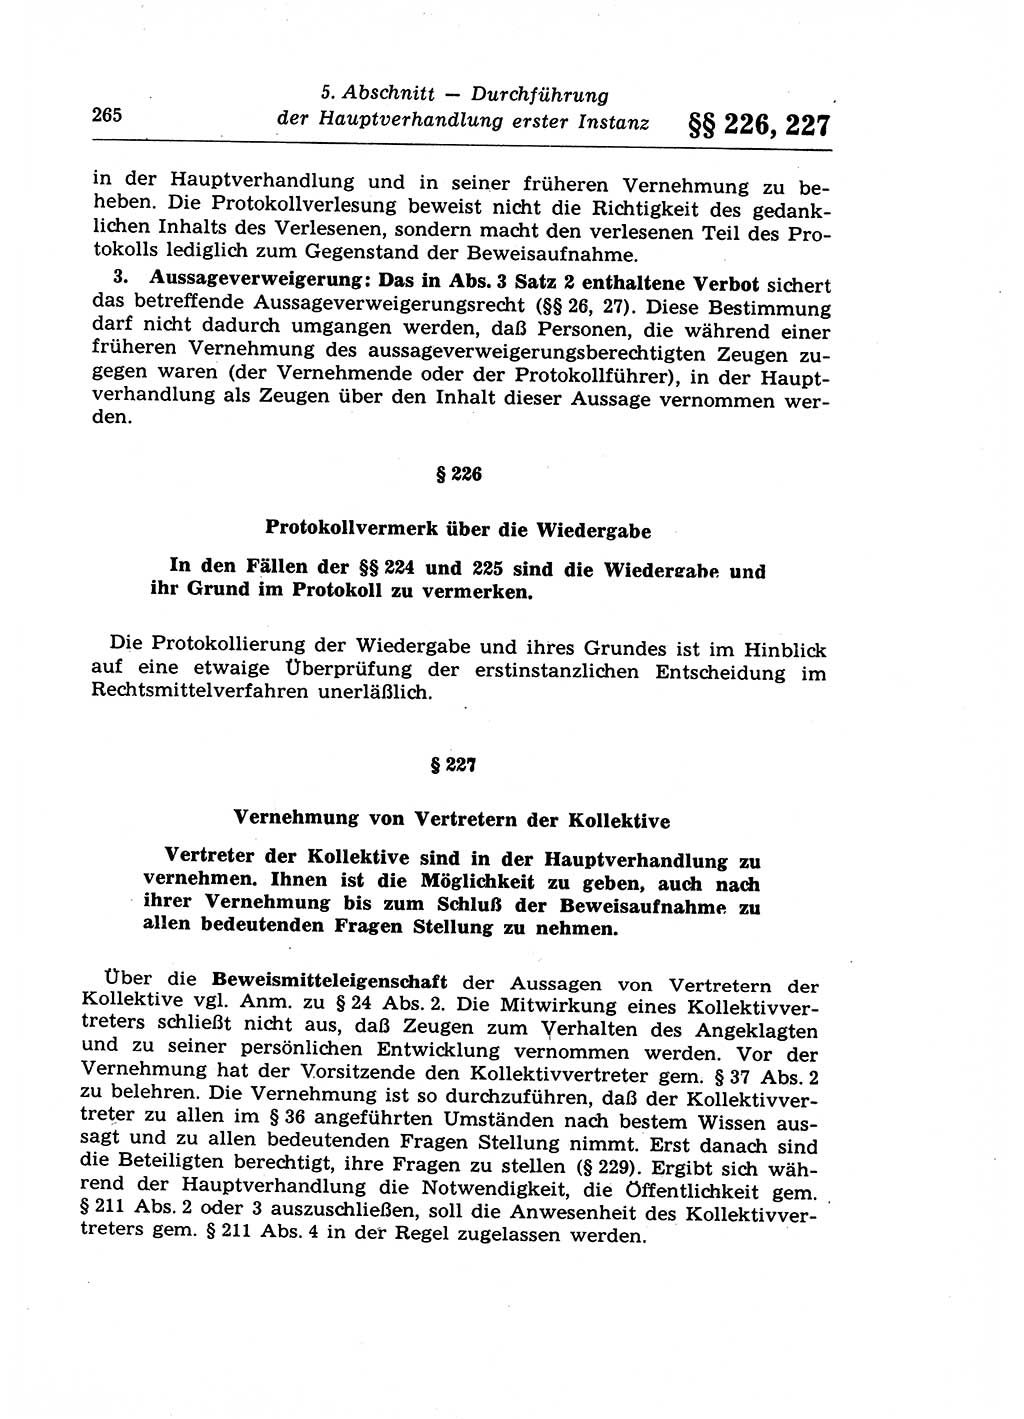 Strafprozeßrecht der DDR (Deutsche Demokratische Republik), Lehrkommentar zur Strafprozeßordnung (StPO) 1968, Seite 265 (Strafprozeßr. DDR Lehrkomm. StPO 19688, S. 265)